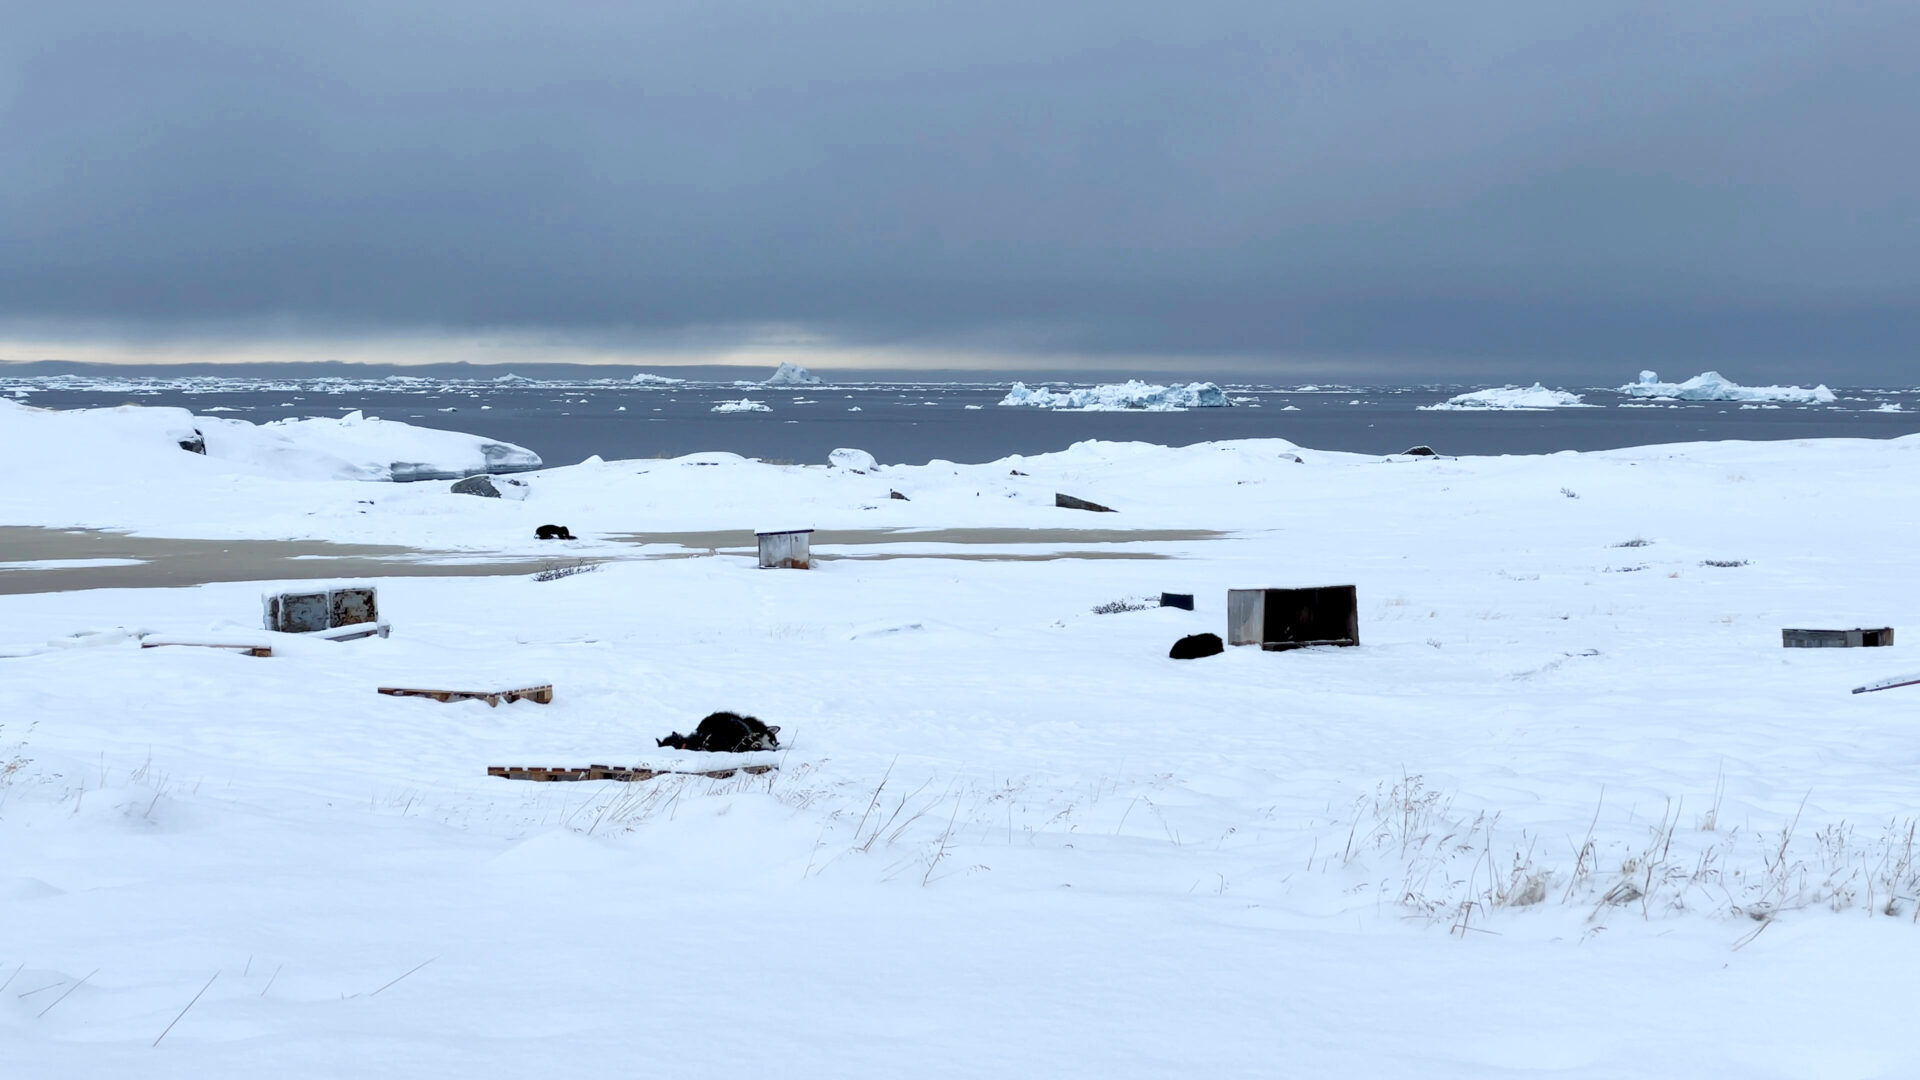 Widok na ośnieżony brzeg na Grenlandii; w wodzie dryfują lodowe skały, niebo jest zachmurzone, pośród drewnianych palet i skrzyń oraz przebijającej się miejscami trawy śpi pies.